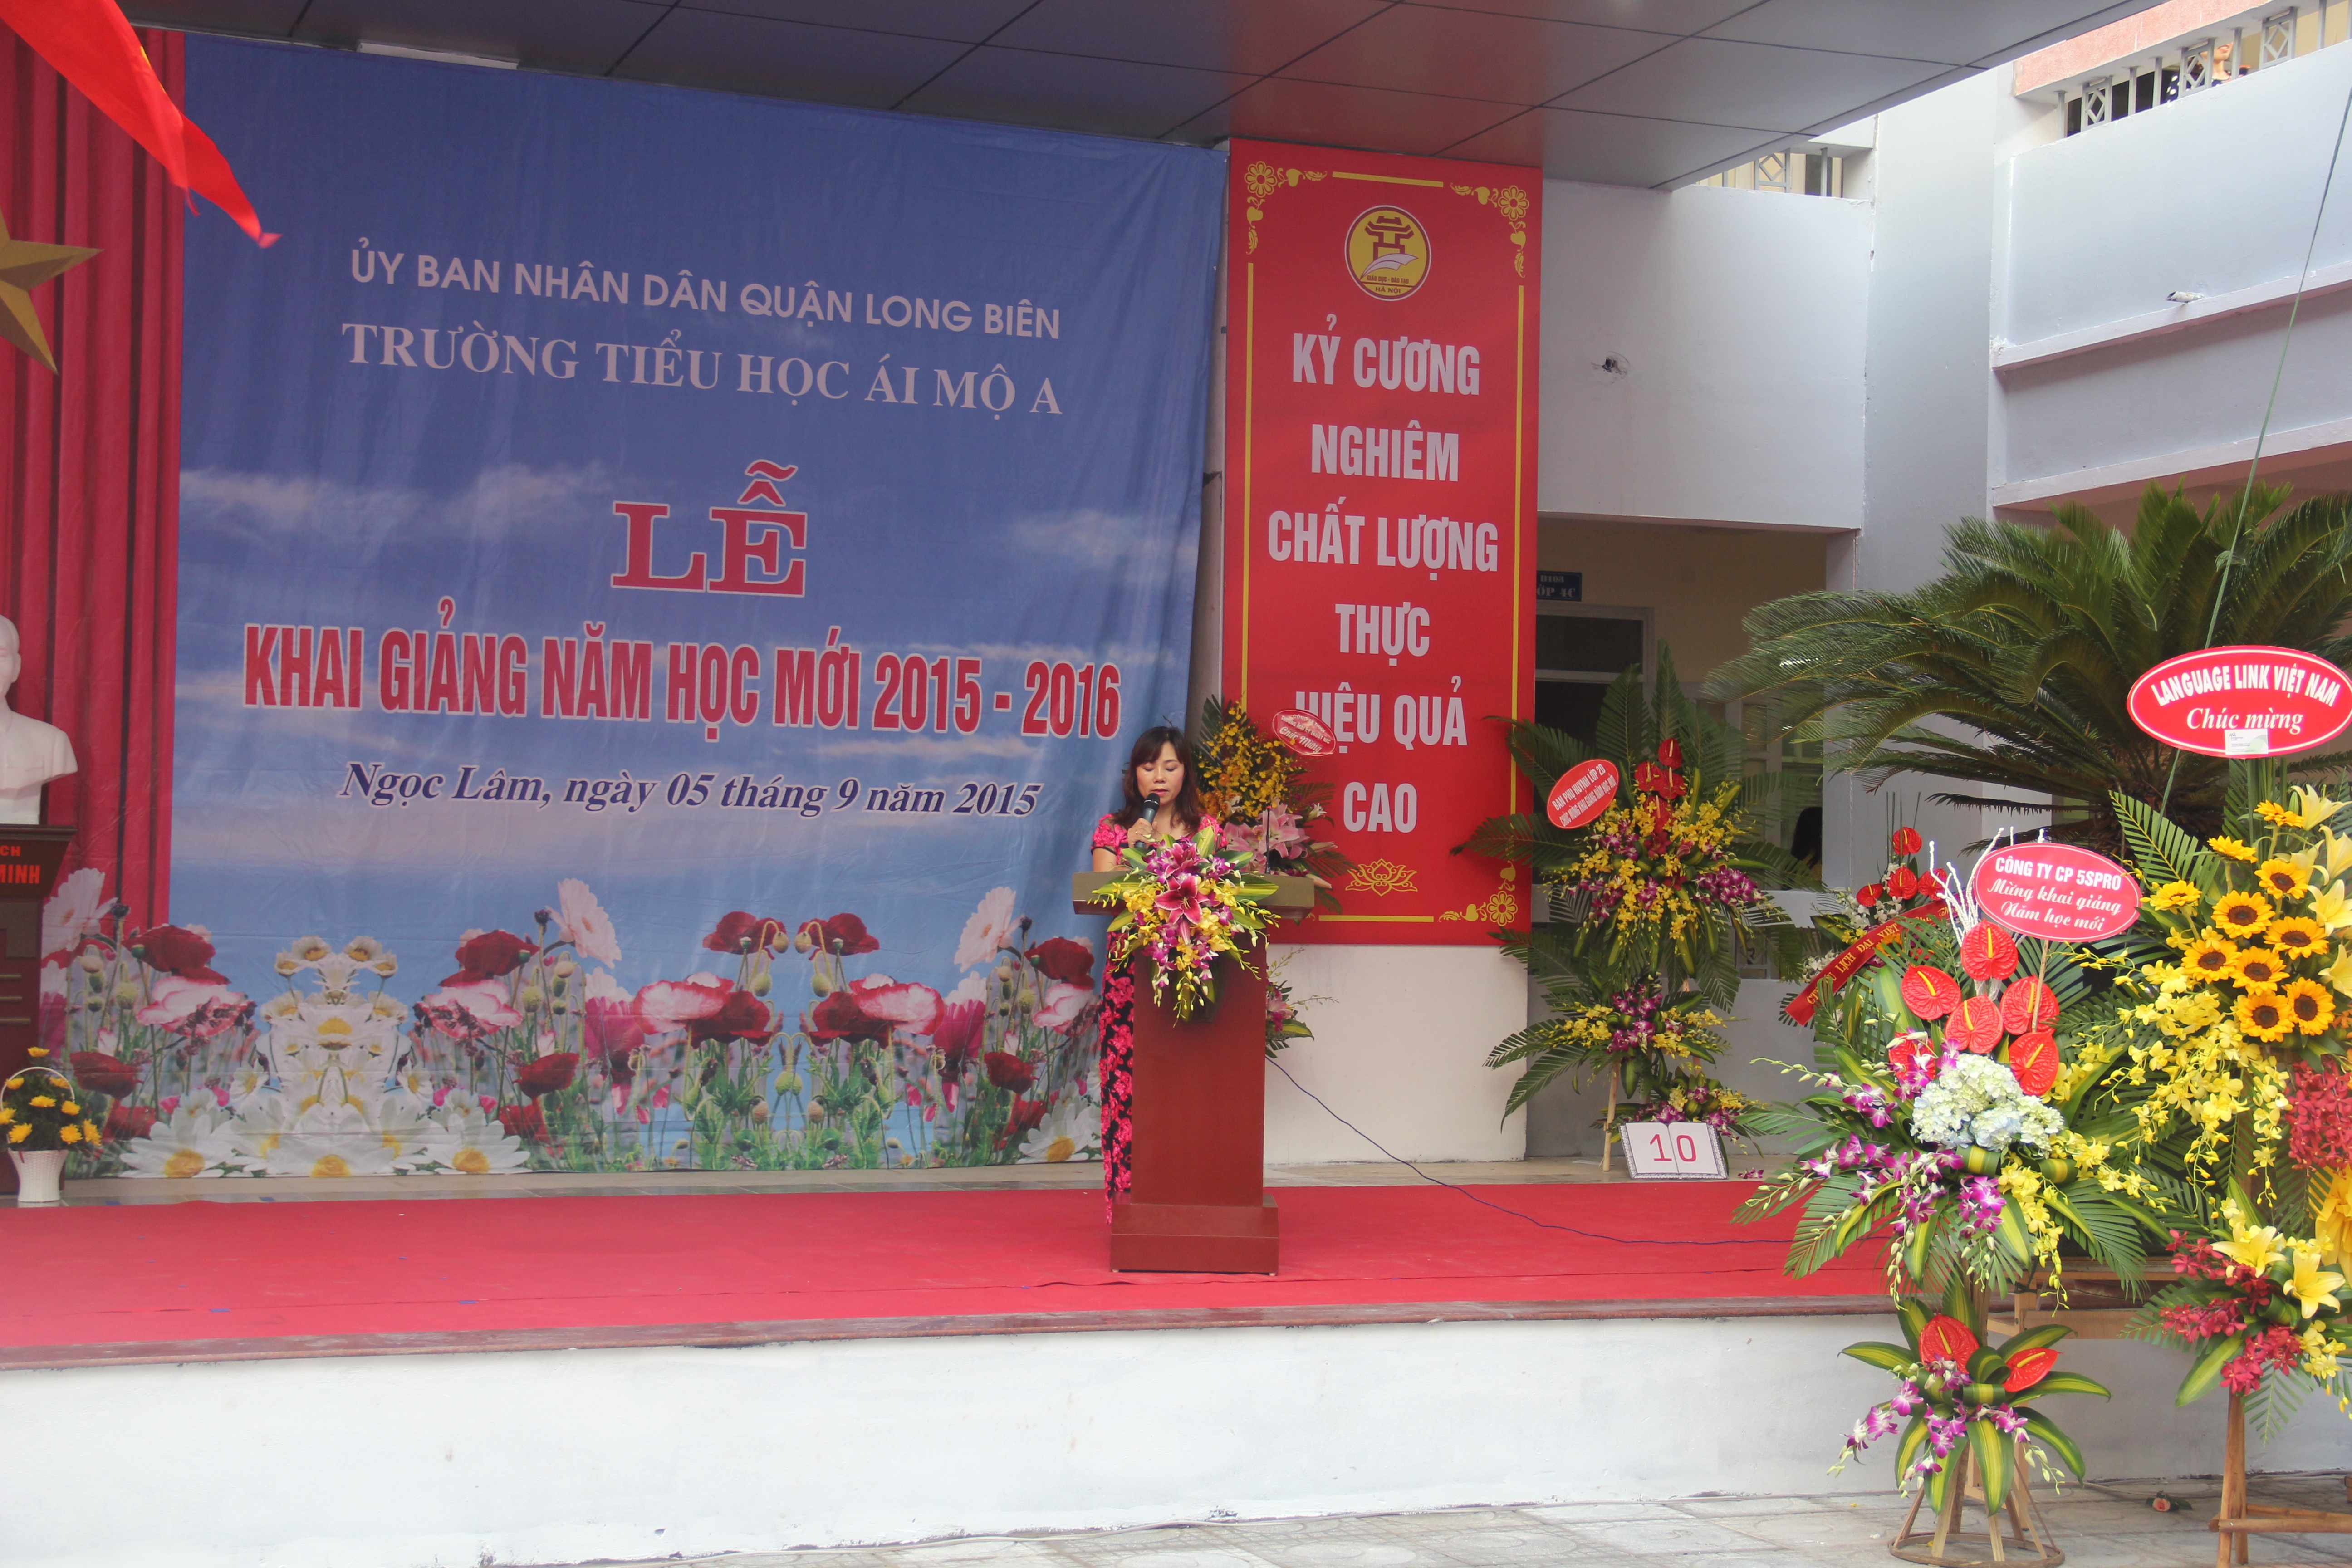 Cô Nguyễn Thị Bích Huyền - Bí thư chi bộ, Hiệu trưởng nhà trường đọc diễn văn khai giảng năm học mới